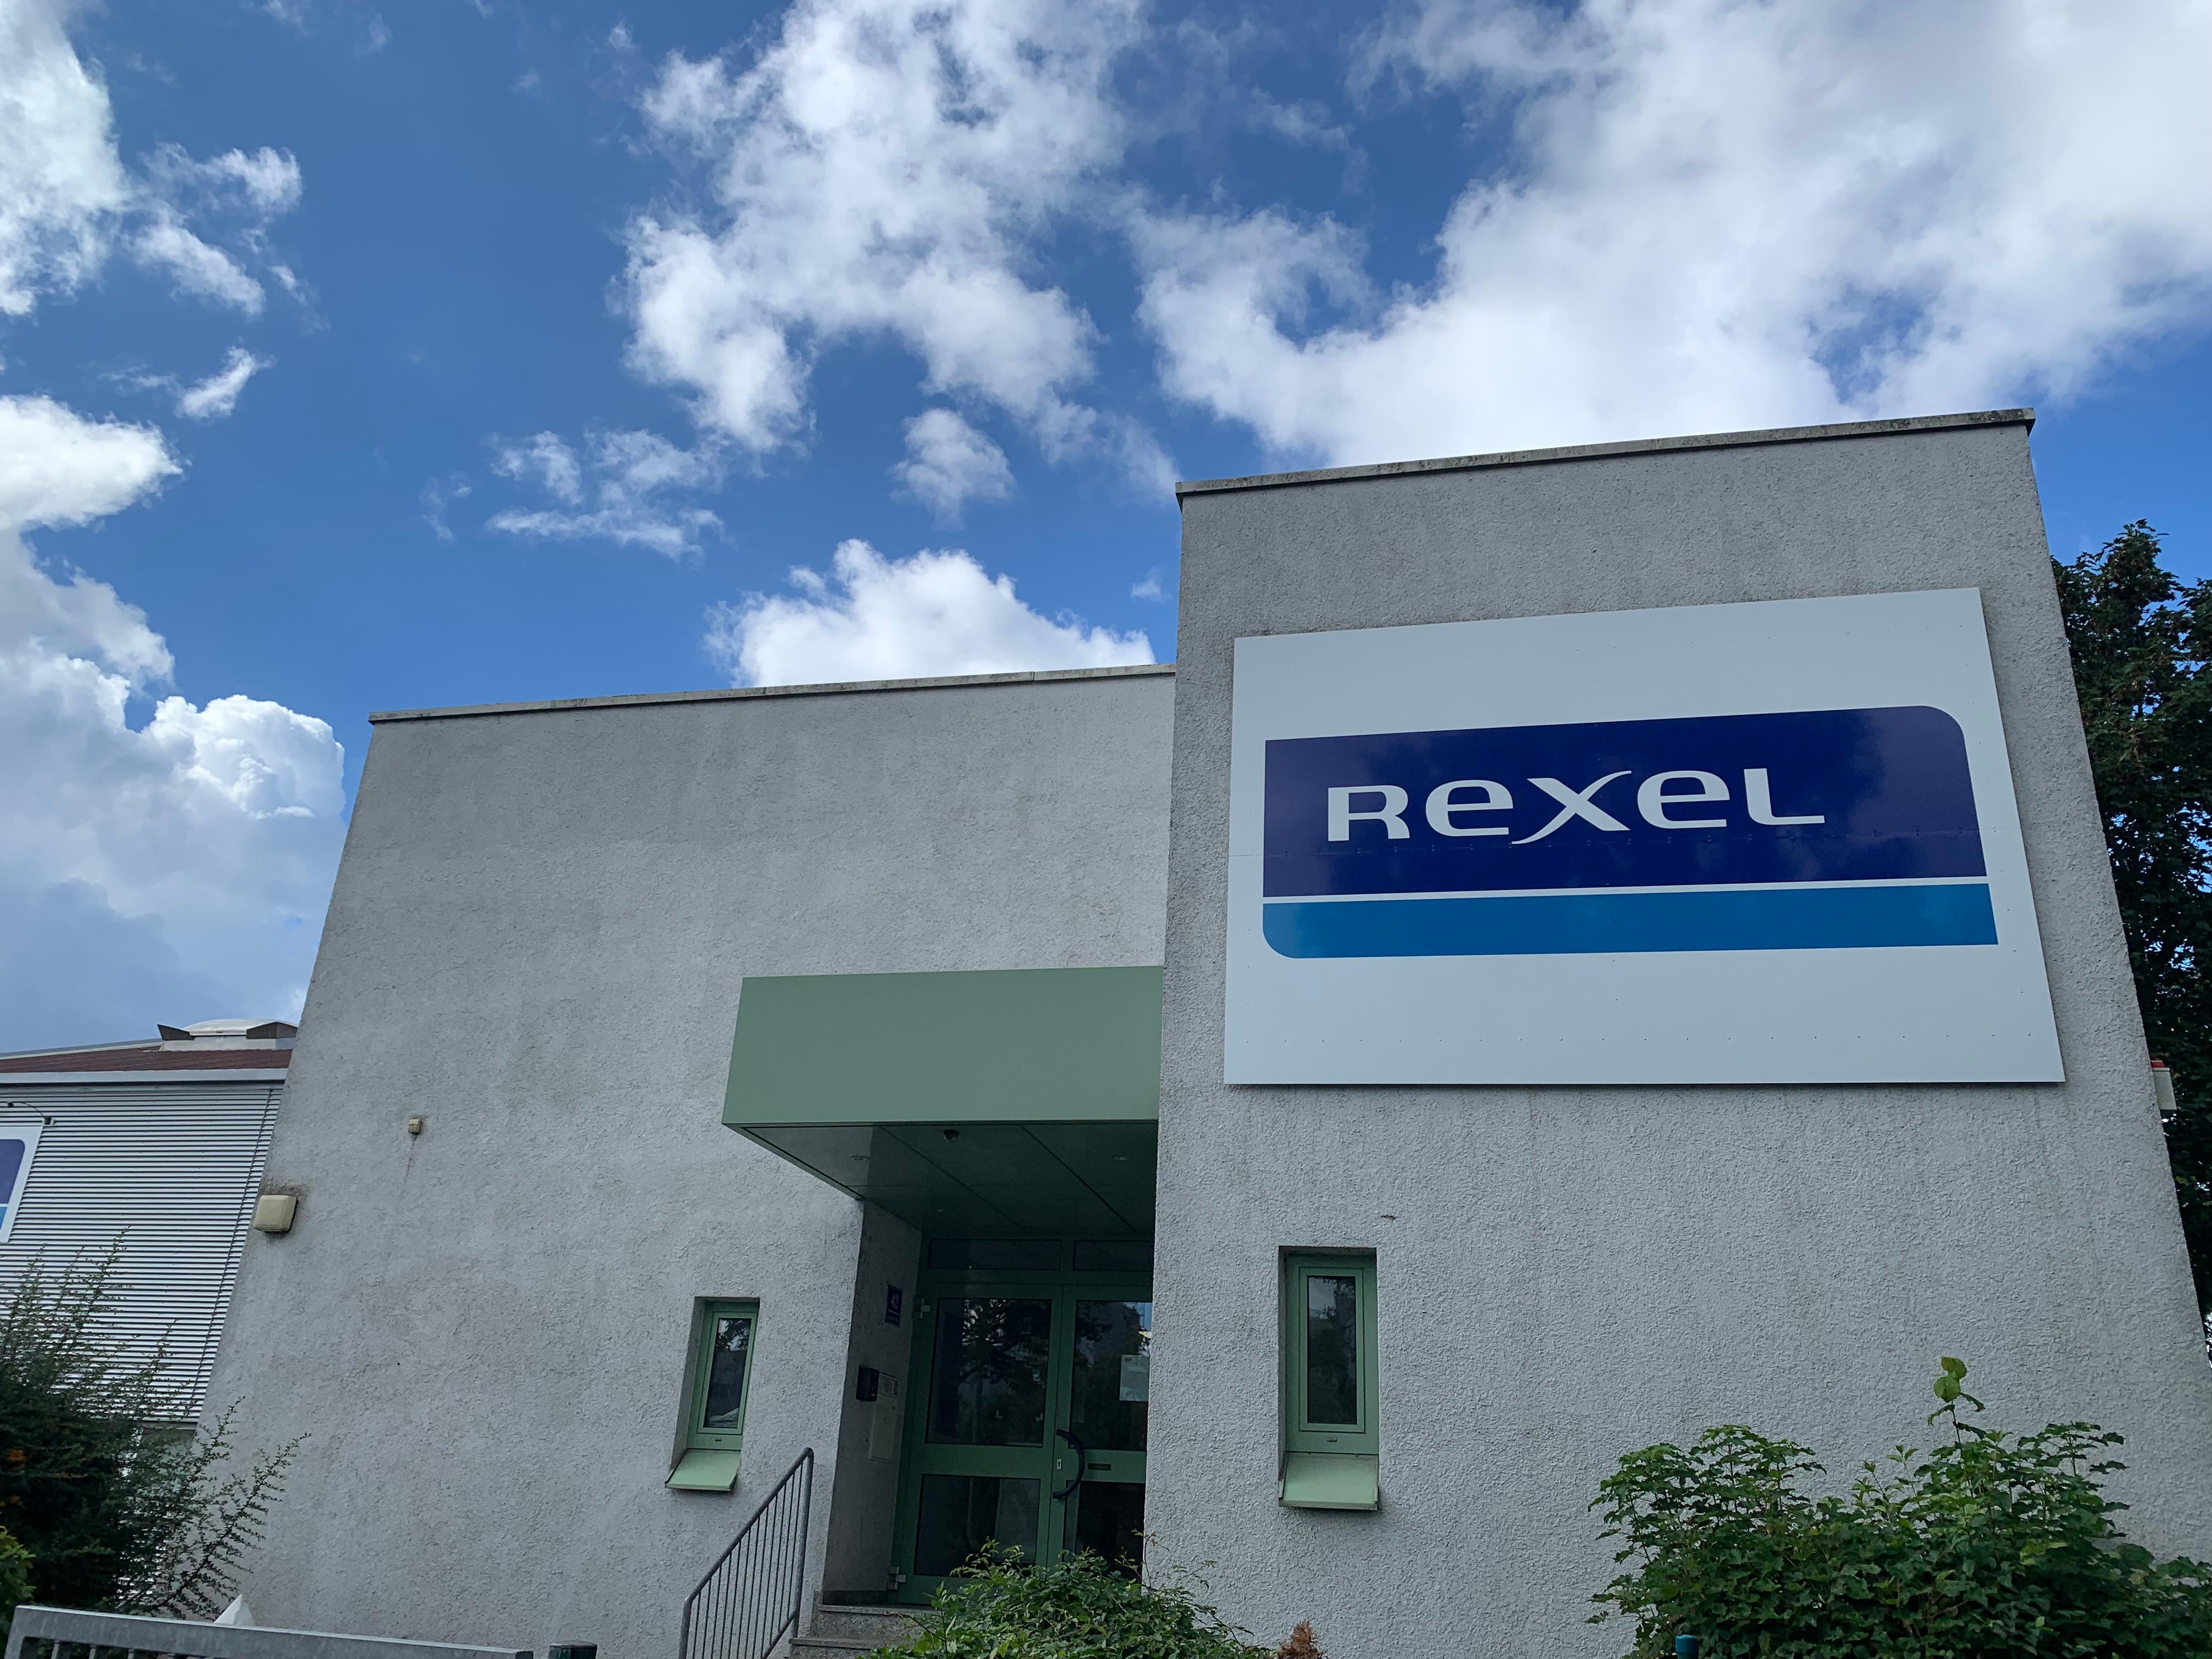 Fotos - Rexel Germany GmbH & Co. KG - 3